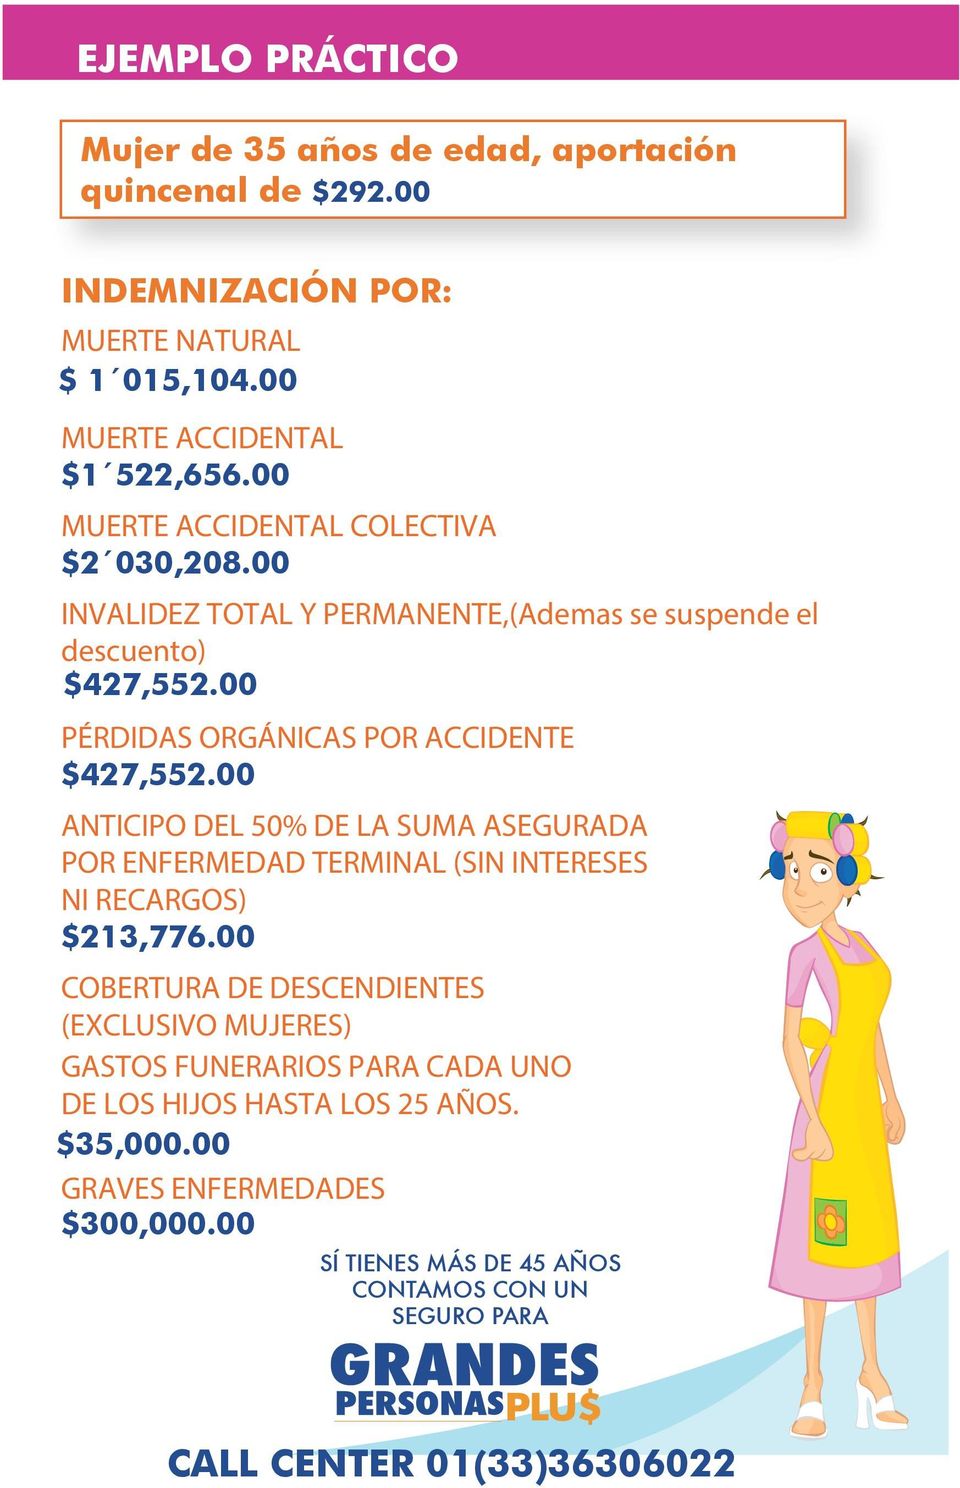 00 ANTICIPO DEL 50% DE LA SUMA ASEGURADA POR ENFERMEDAD TERMINAL (SIN INTERESES NI RECARGOS) $213,776.